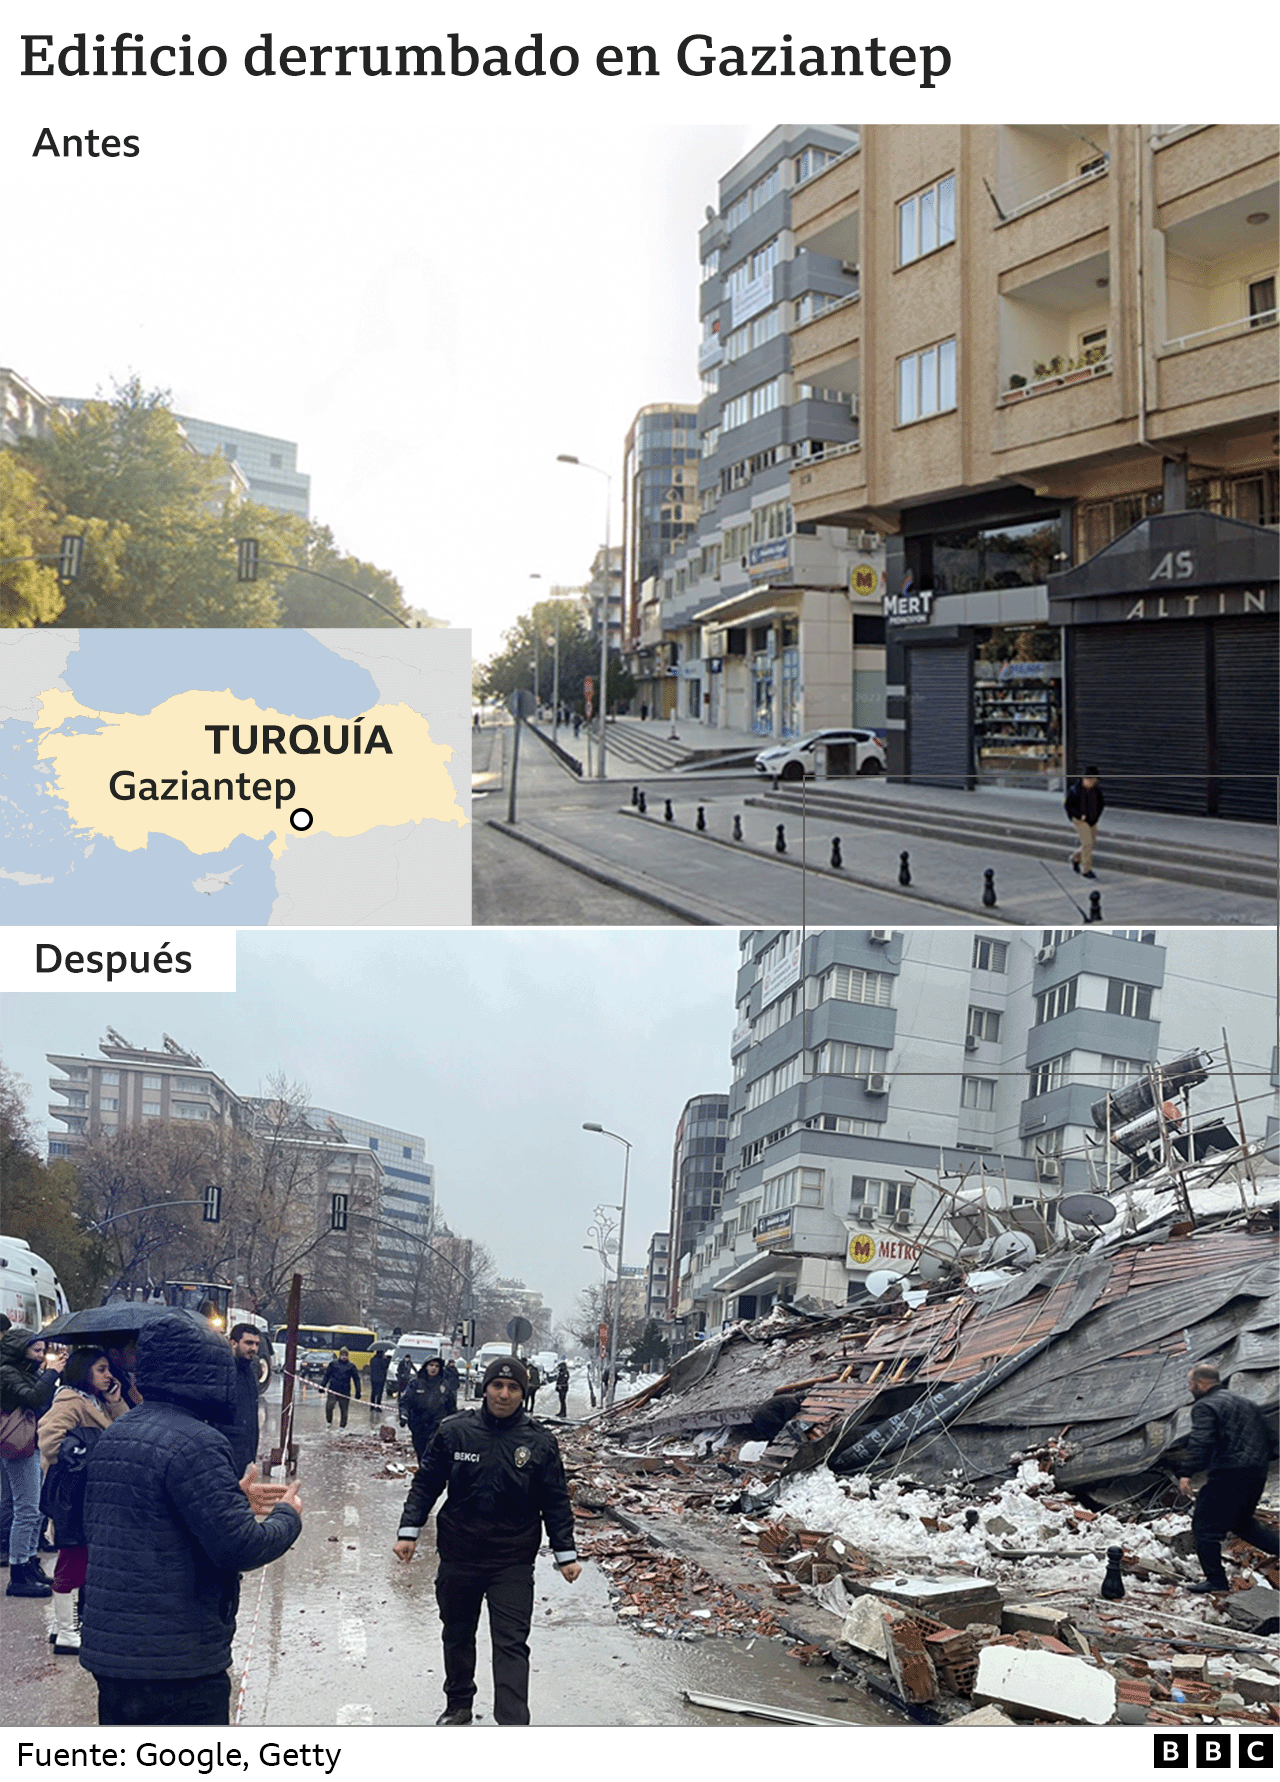 Edificio en Gaziantep antes y después del terremoto